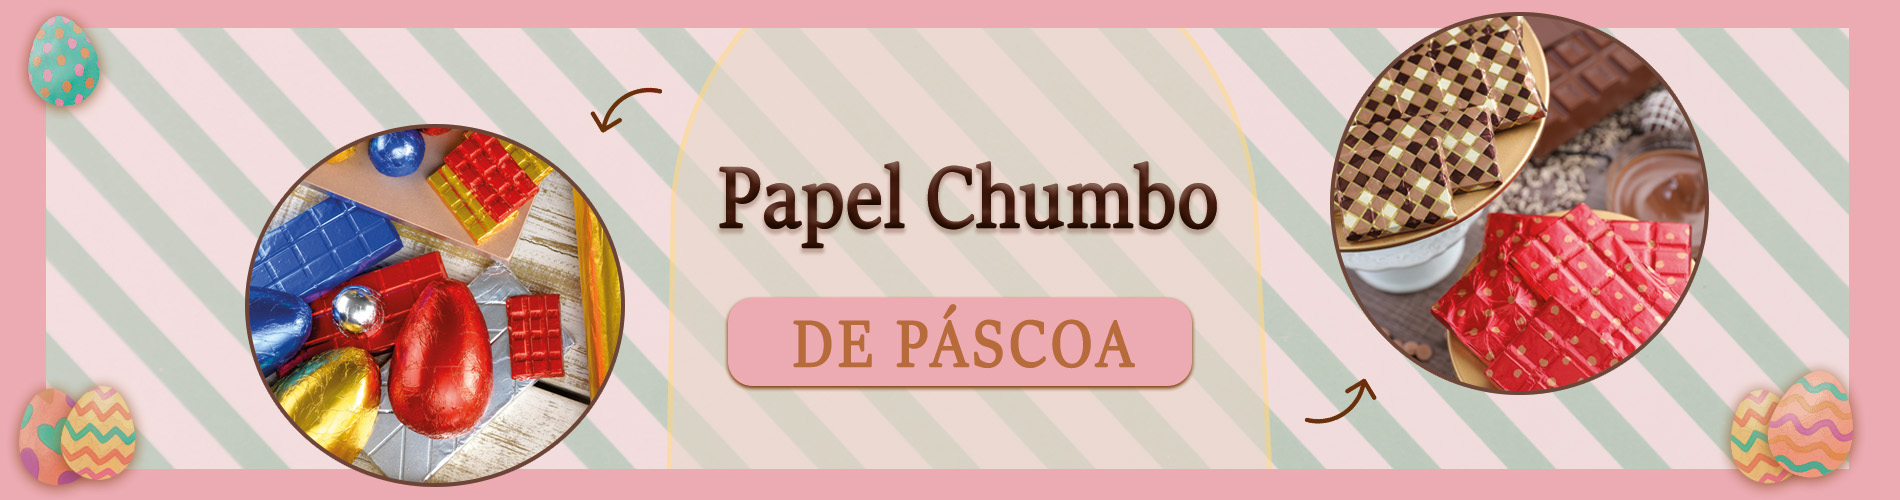 Banner Categoria páscoa Papel Chumbo